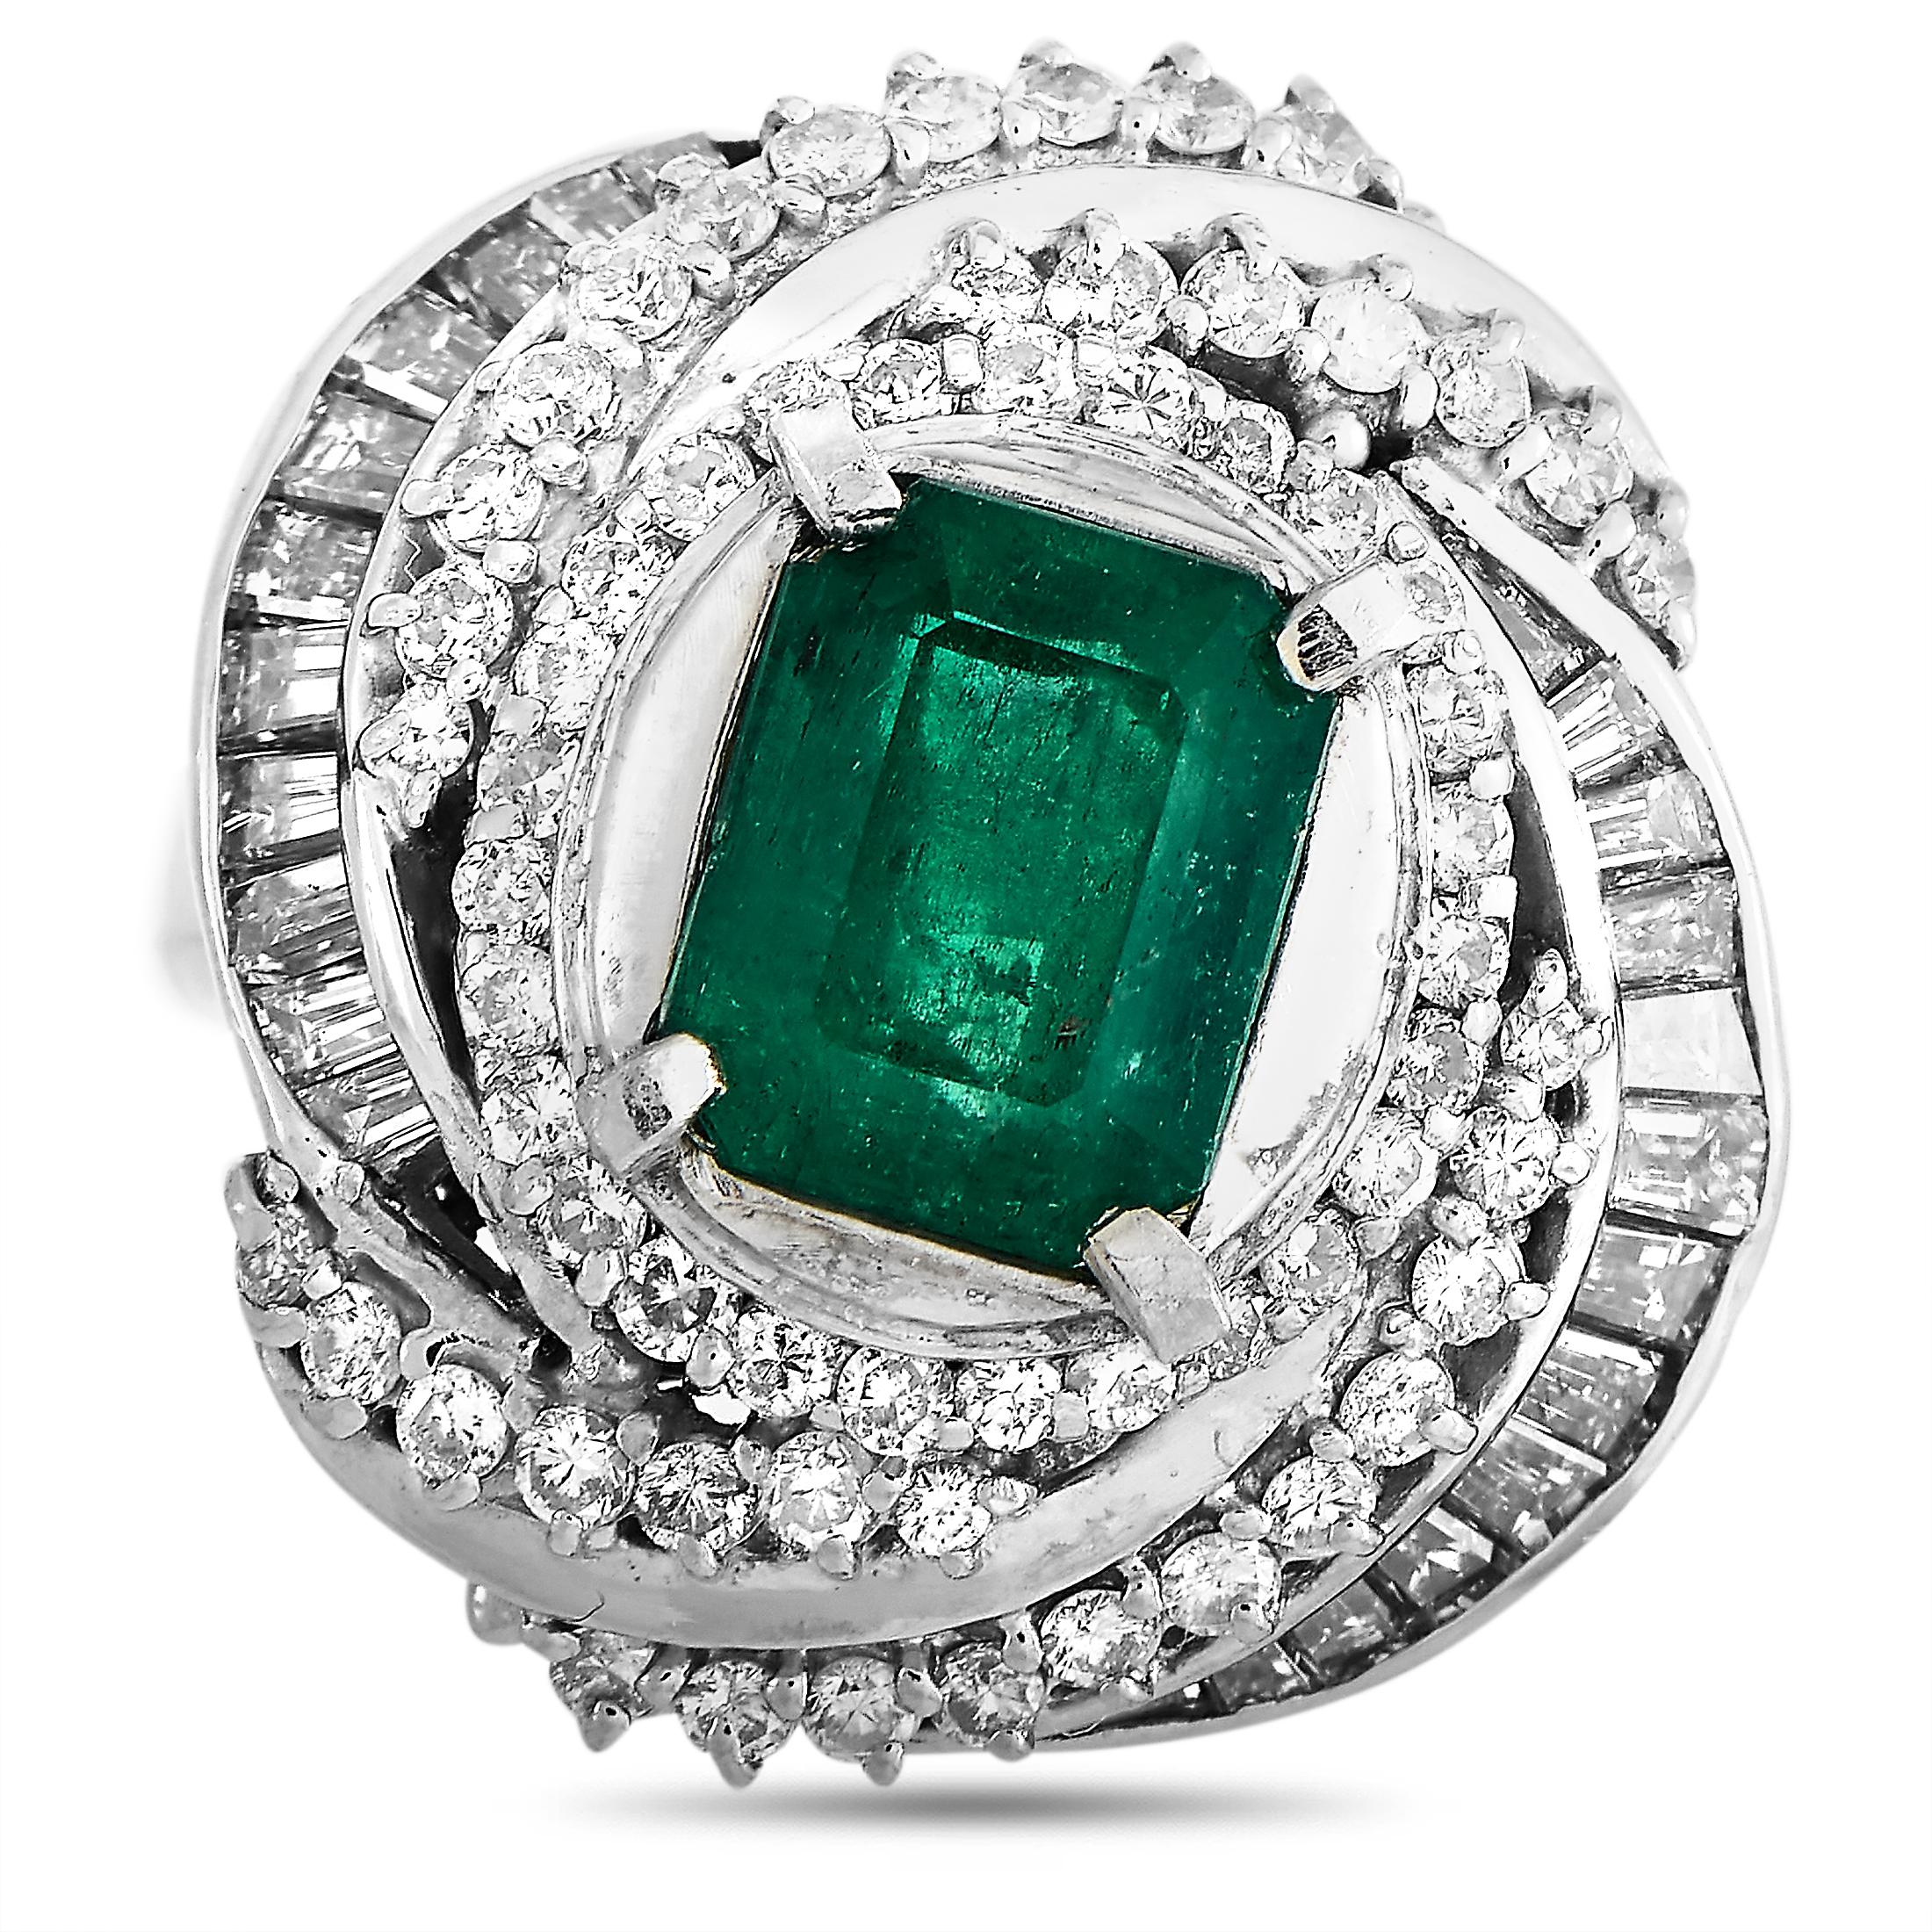 Women's LB Exclusive Platinum 1.79 Carat Diamond and Emerald Ring